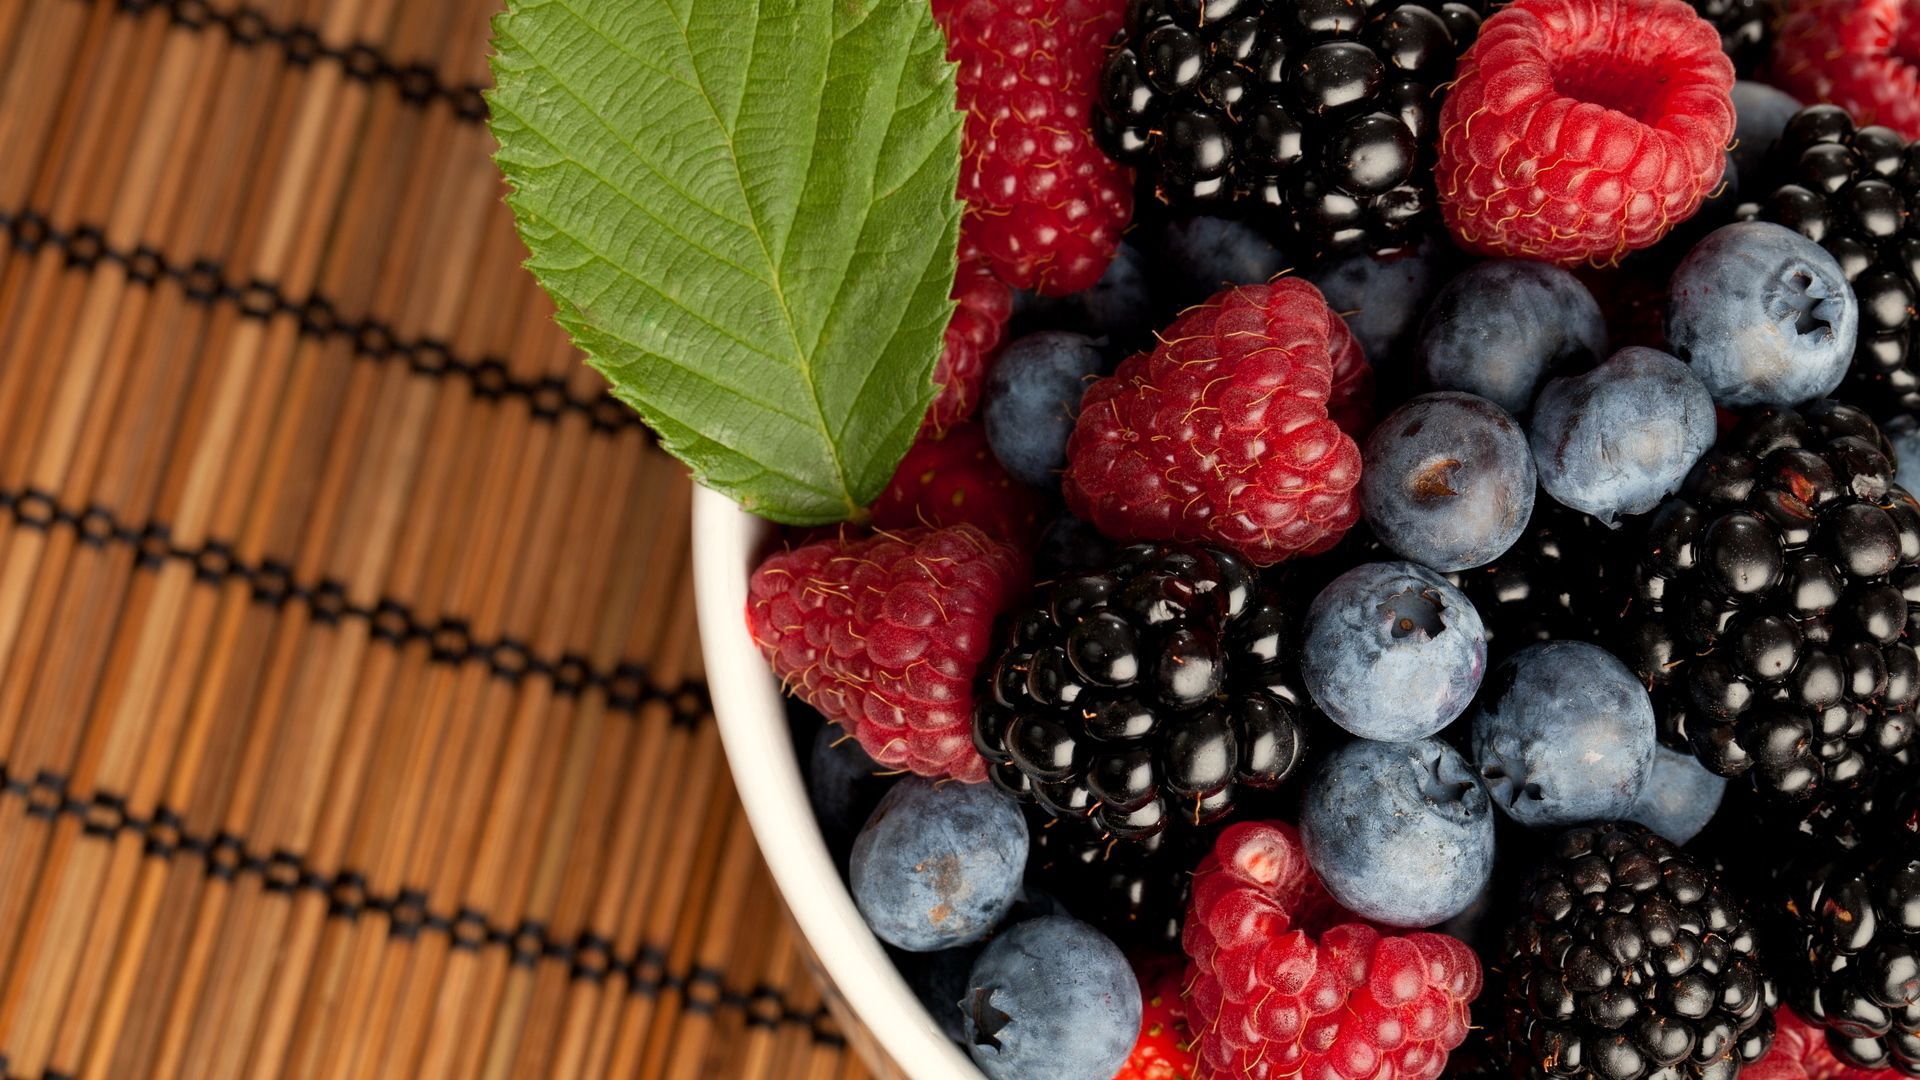 Raspberry berries, plate, bilberries, food Free Stock Photos